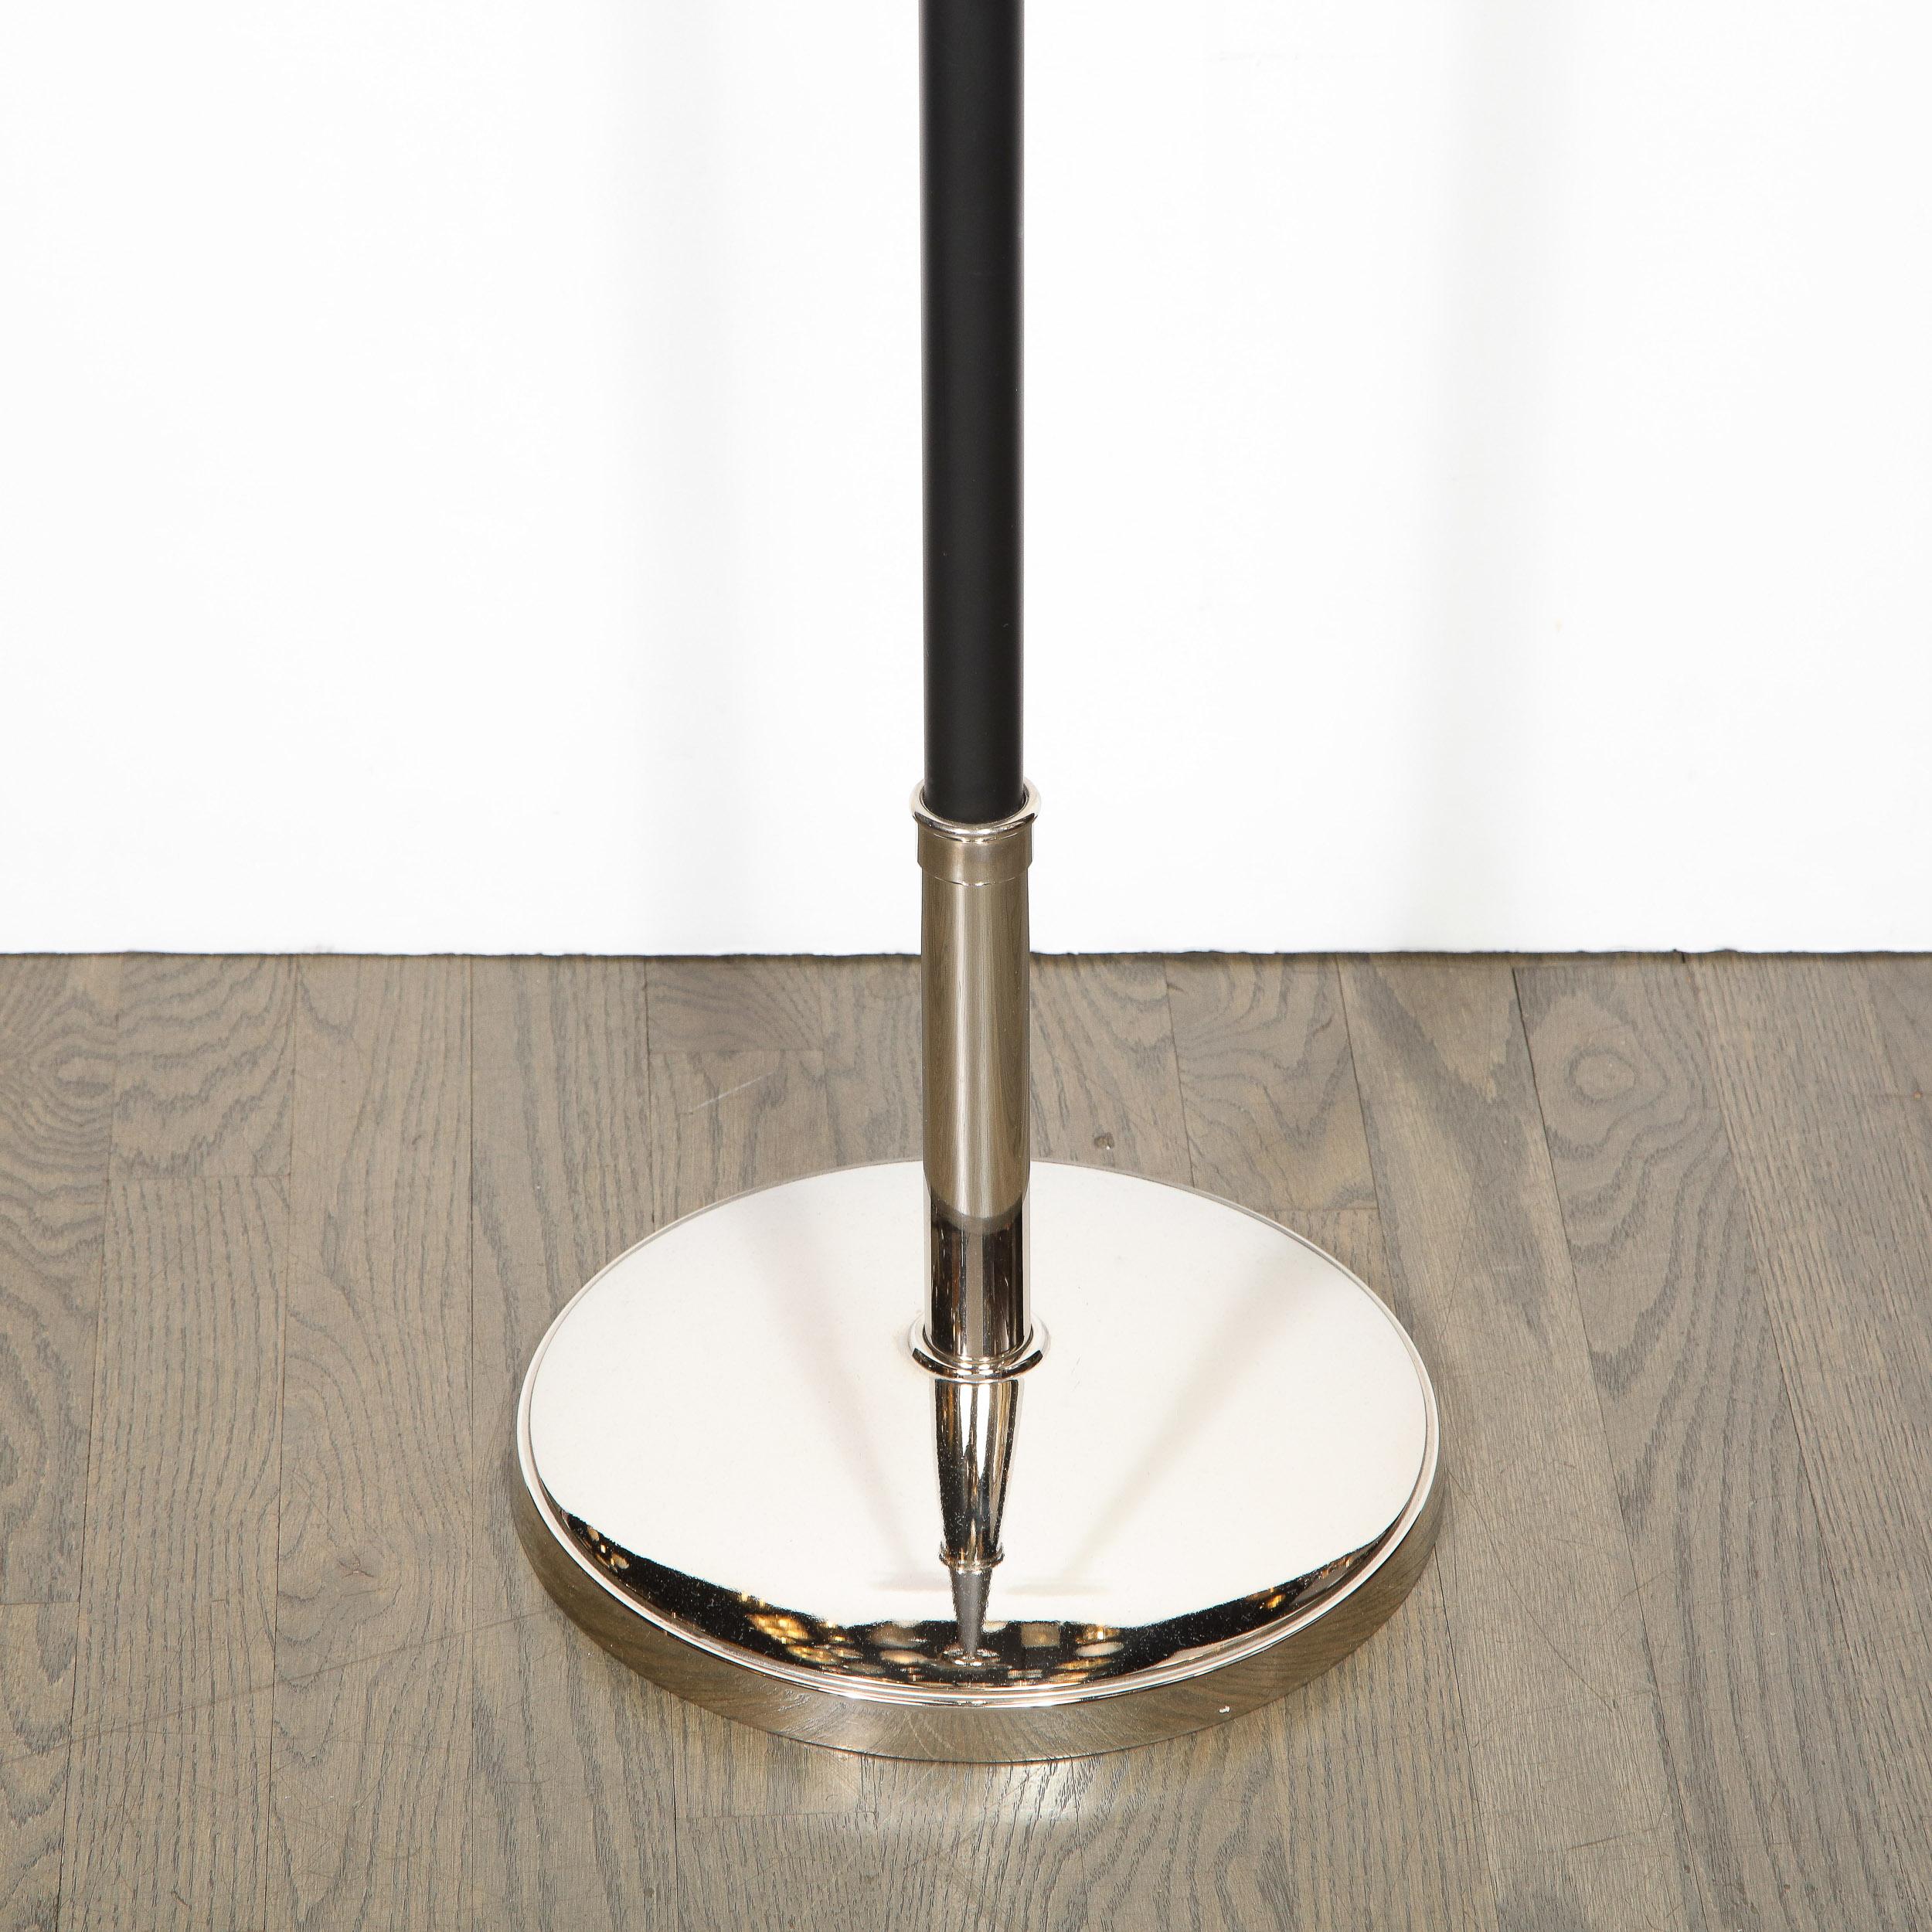 American Midcentury Polished Nickel & Black Enamel Floor Lamp, Manner of Tommi Parzinger